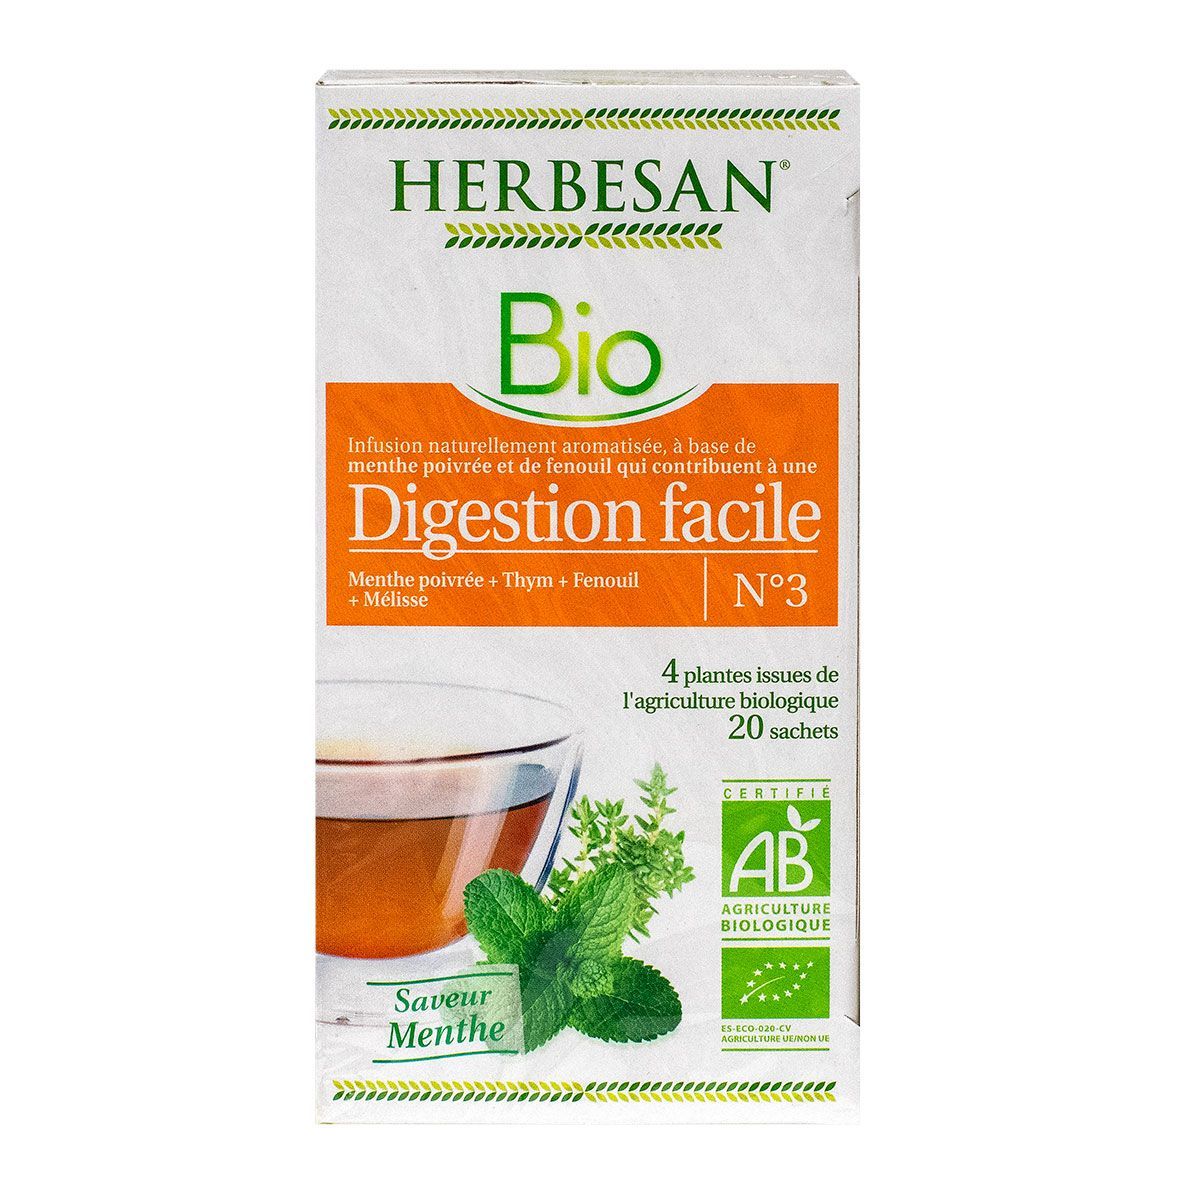 Infusion bio digestion facile 20 sachets est une infusion bio aromatisée  favorisant la digestion.